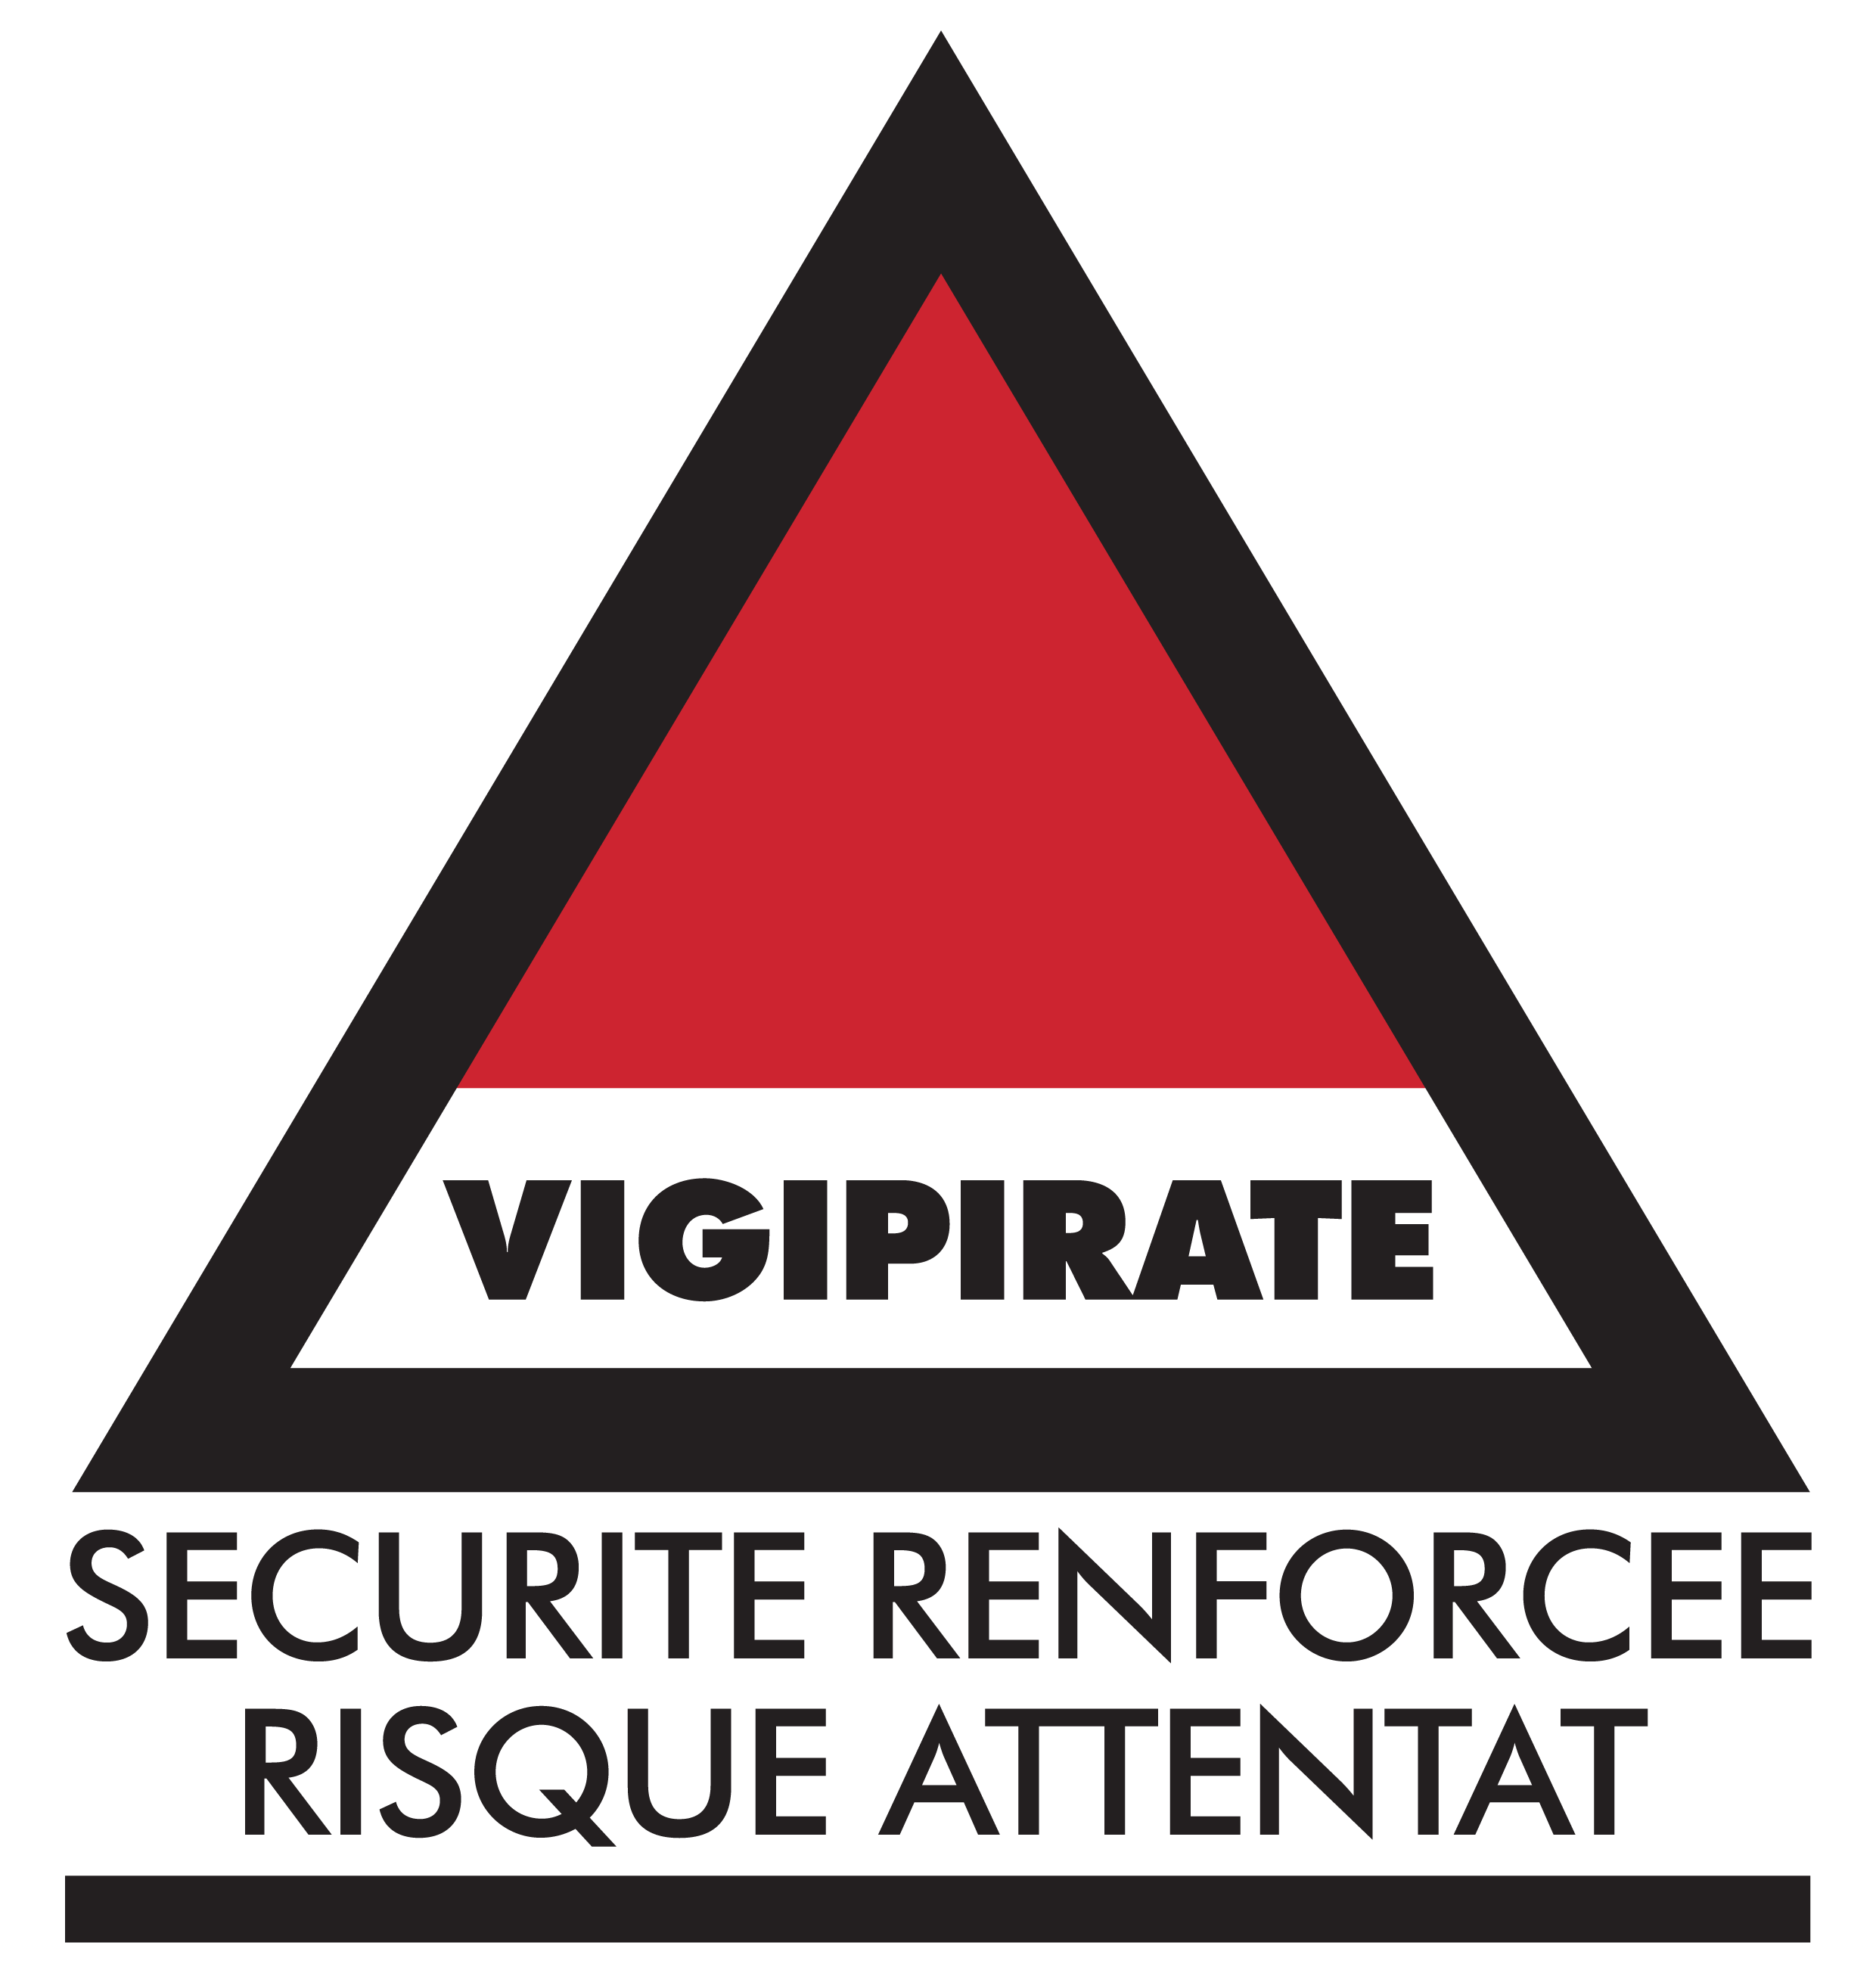 c_logo vigipirate_sécurité renforcée risque attentat.png